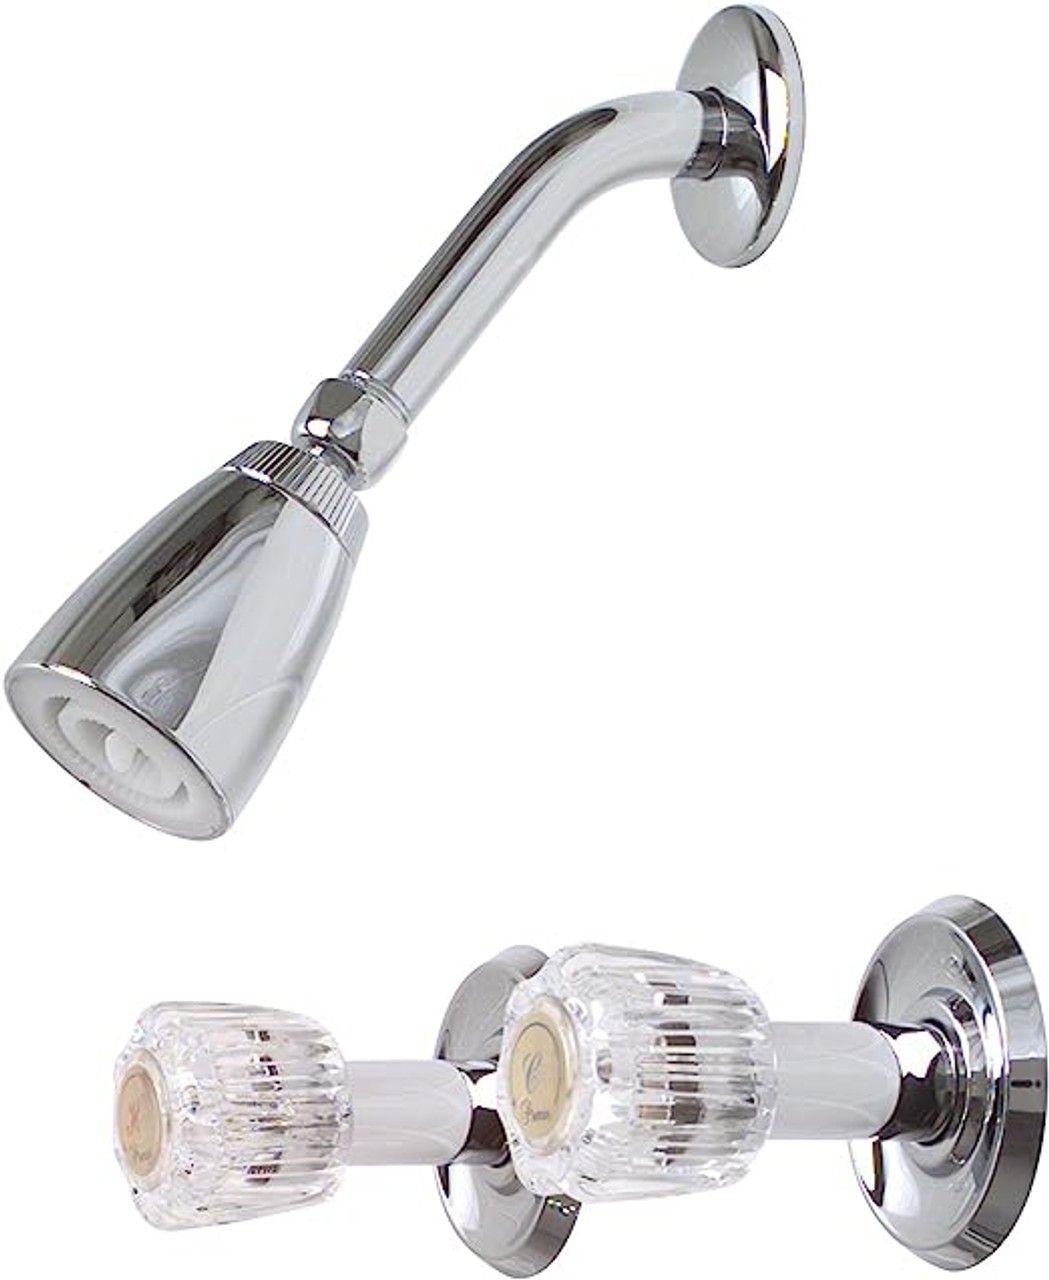 Premier 2012062 Concord Two-Handle Shower Faucet, Chrome